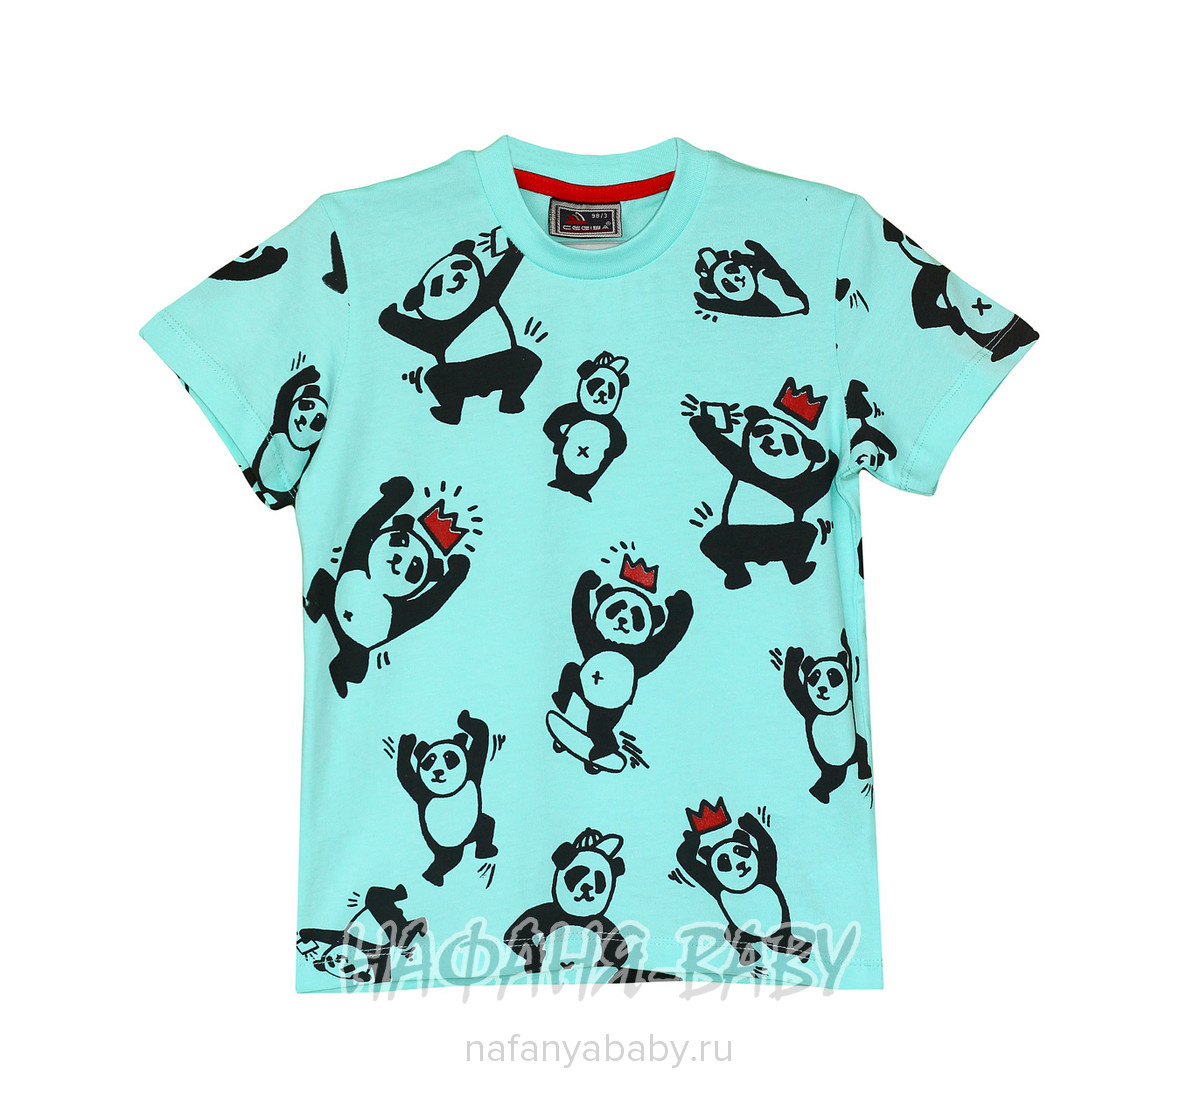 Детская футболка CEGISA арт: 9437, 5-9 лет, 1-4 года, цвет бирюзовый, оптом Турция